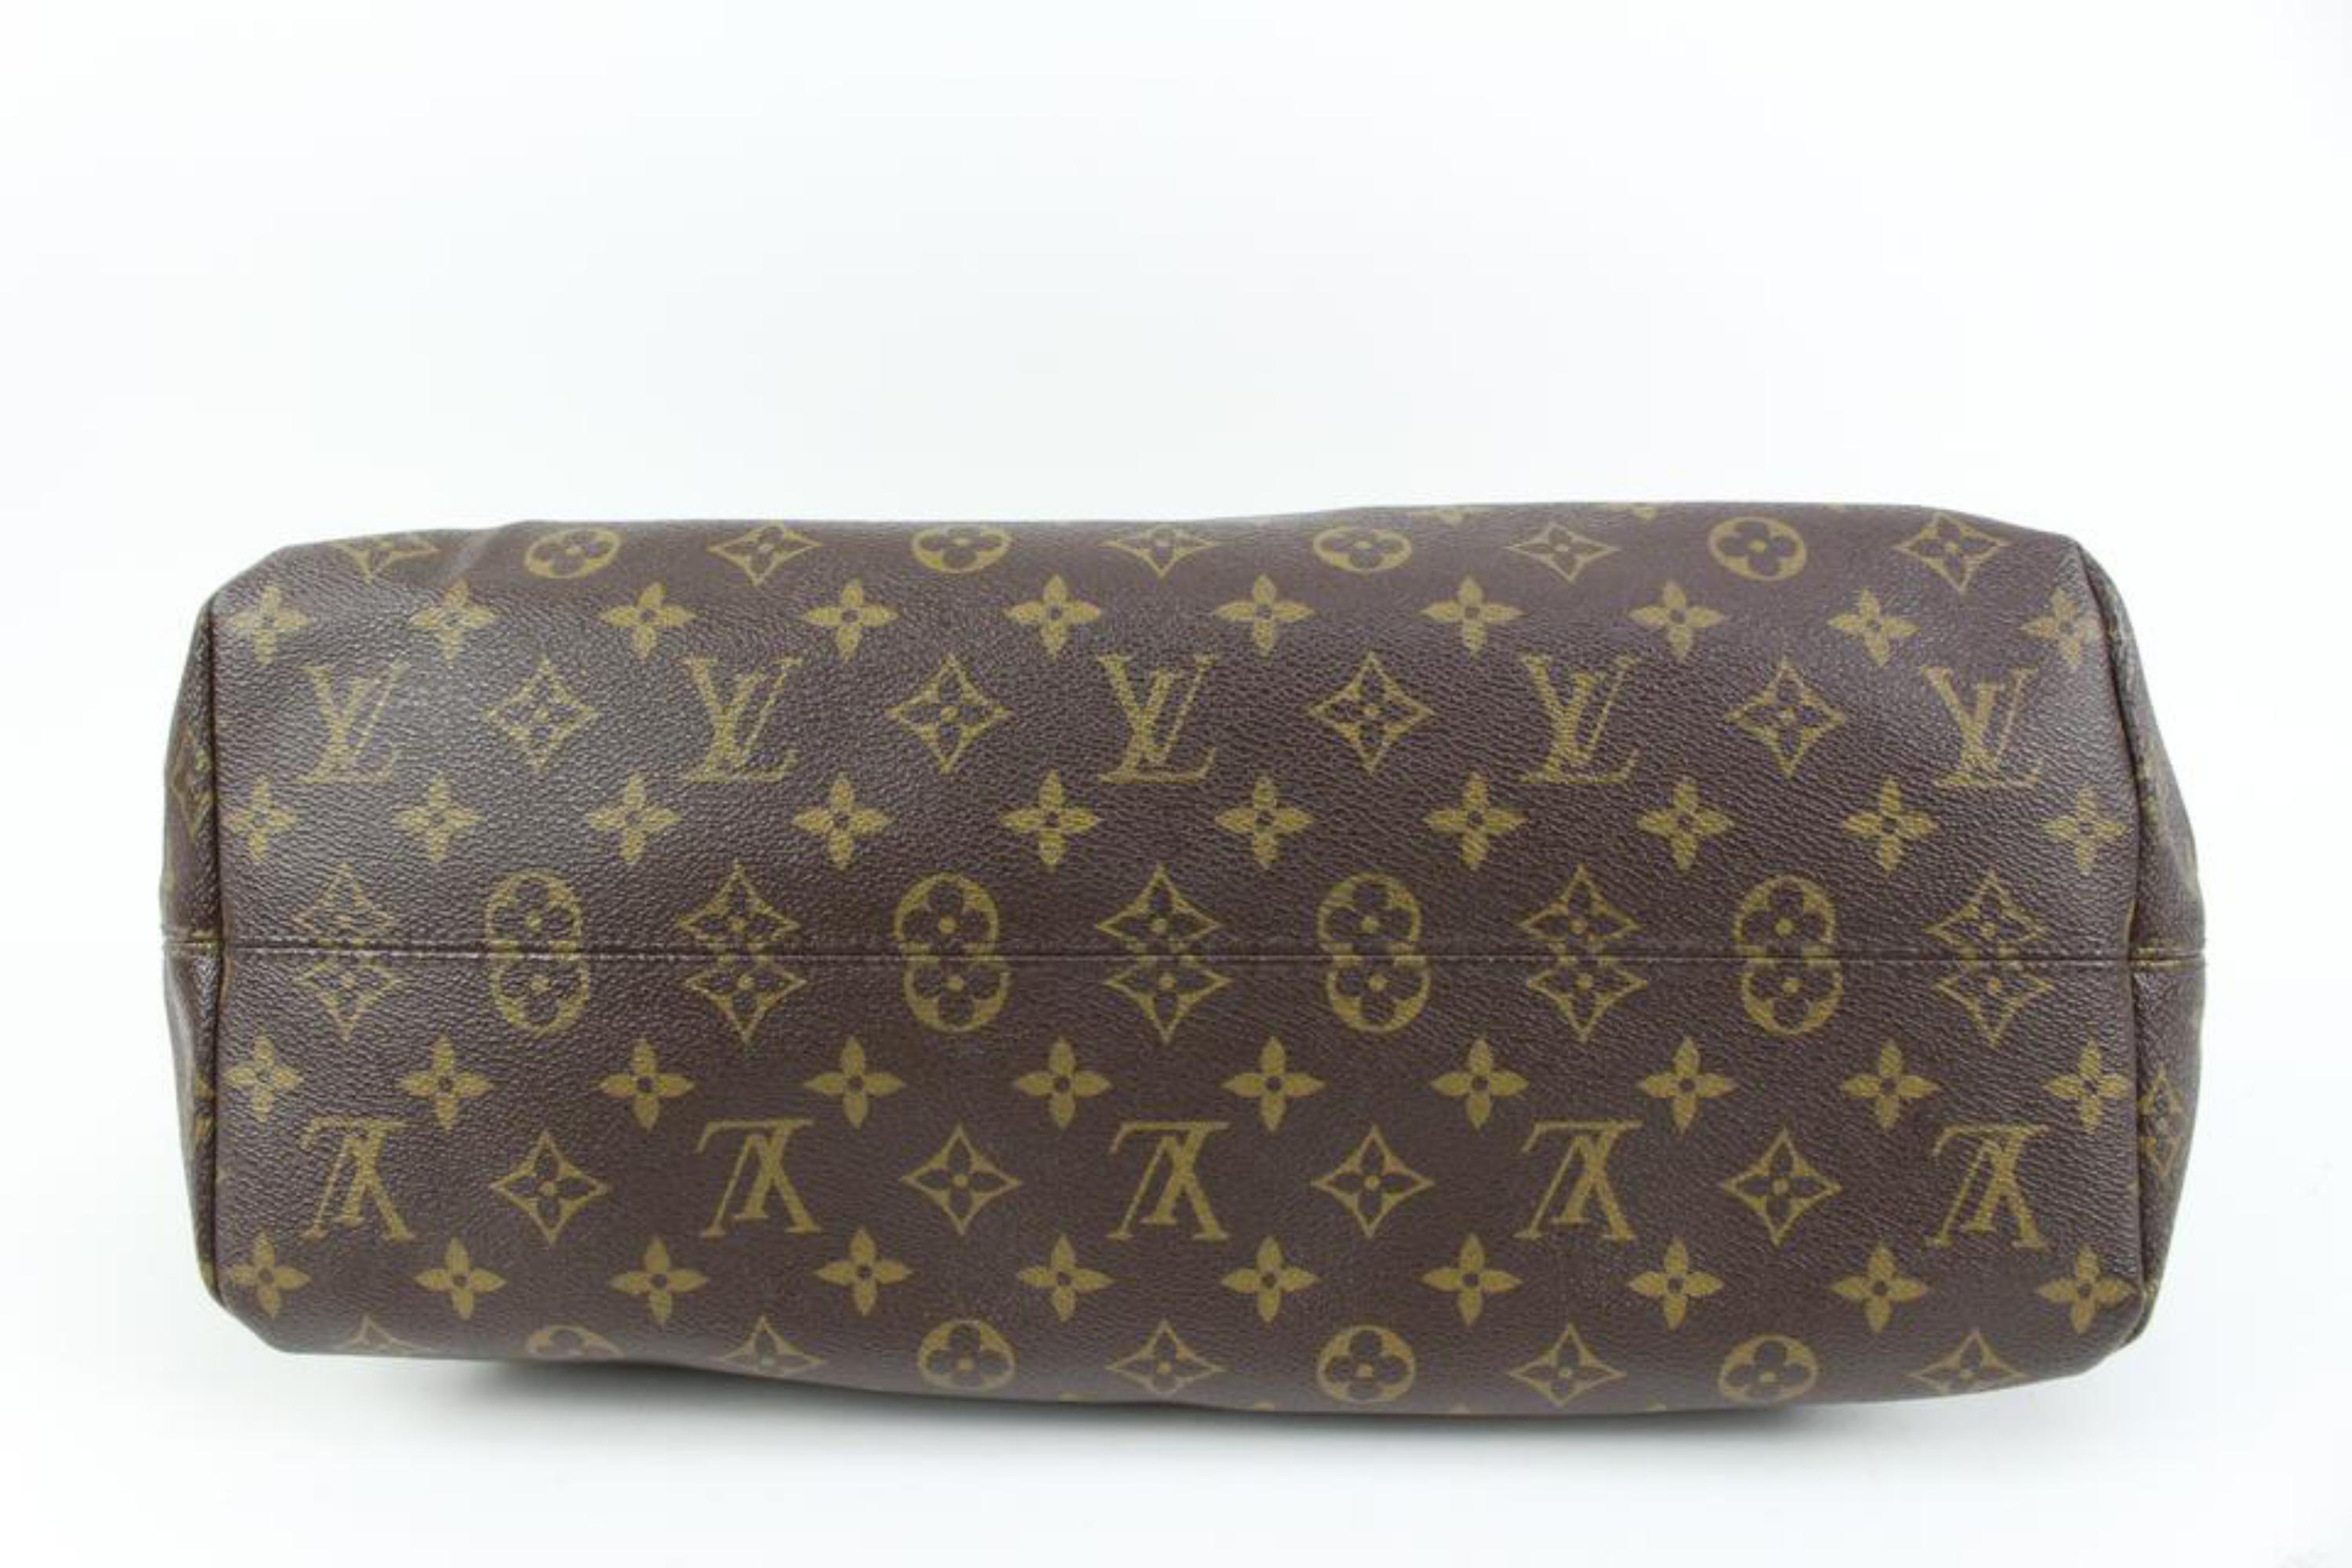 Gray Louis Vuitton Monogram Raspail MM Tote Bag 3LV59a